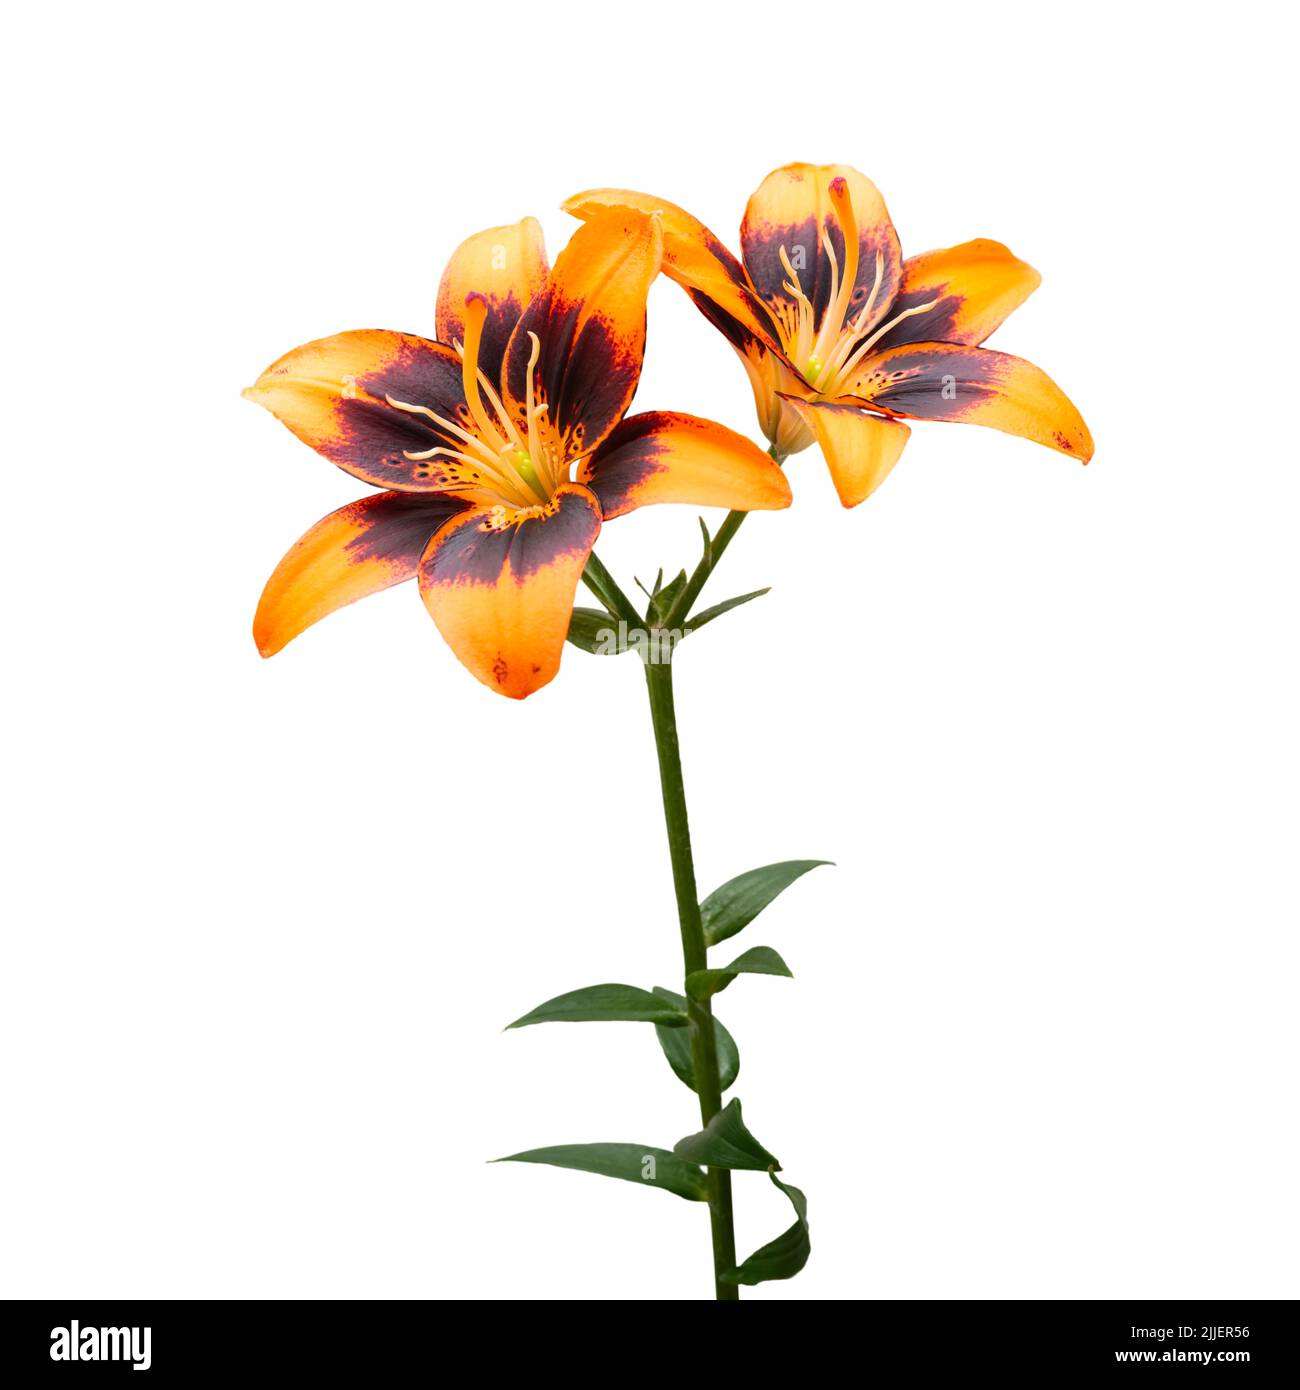 Orange Lily Flowers Isolated on White Background Stock Photo